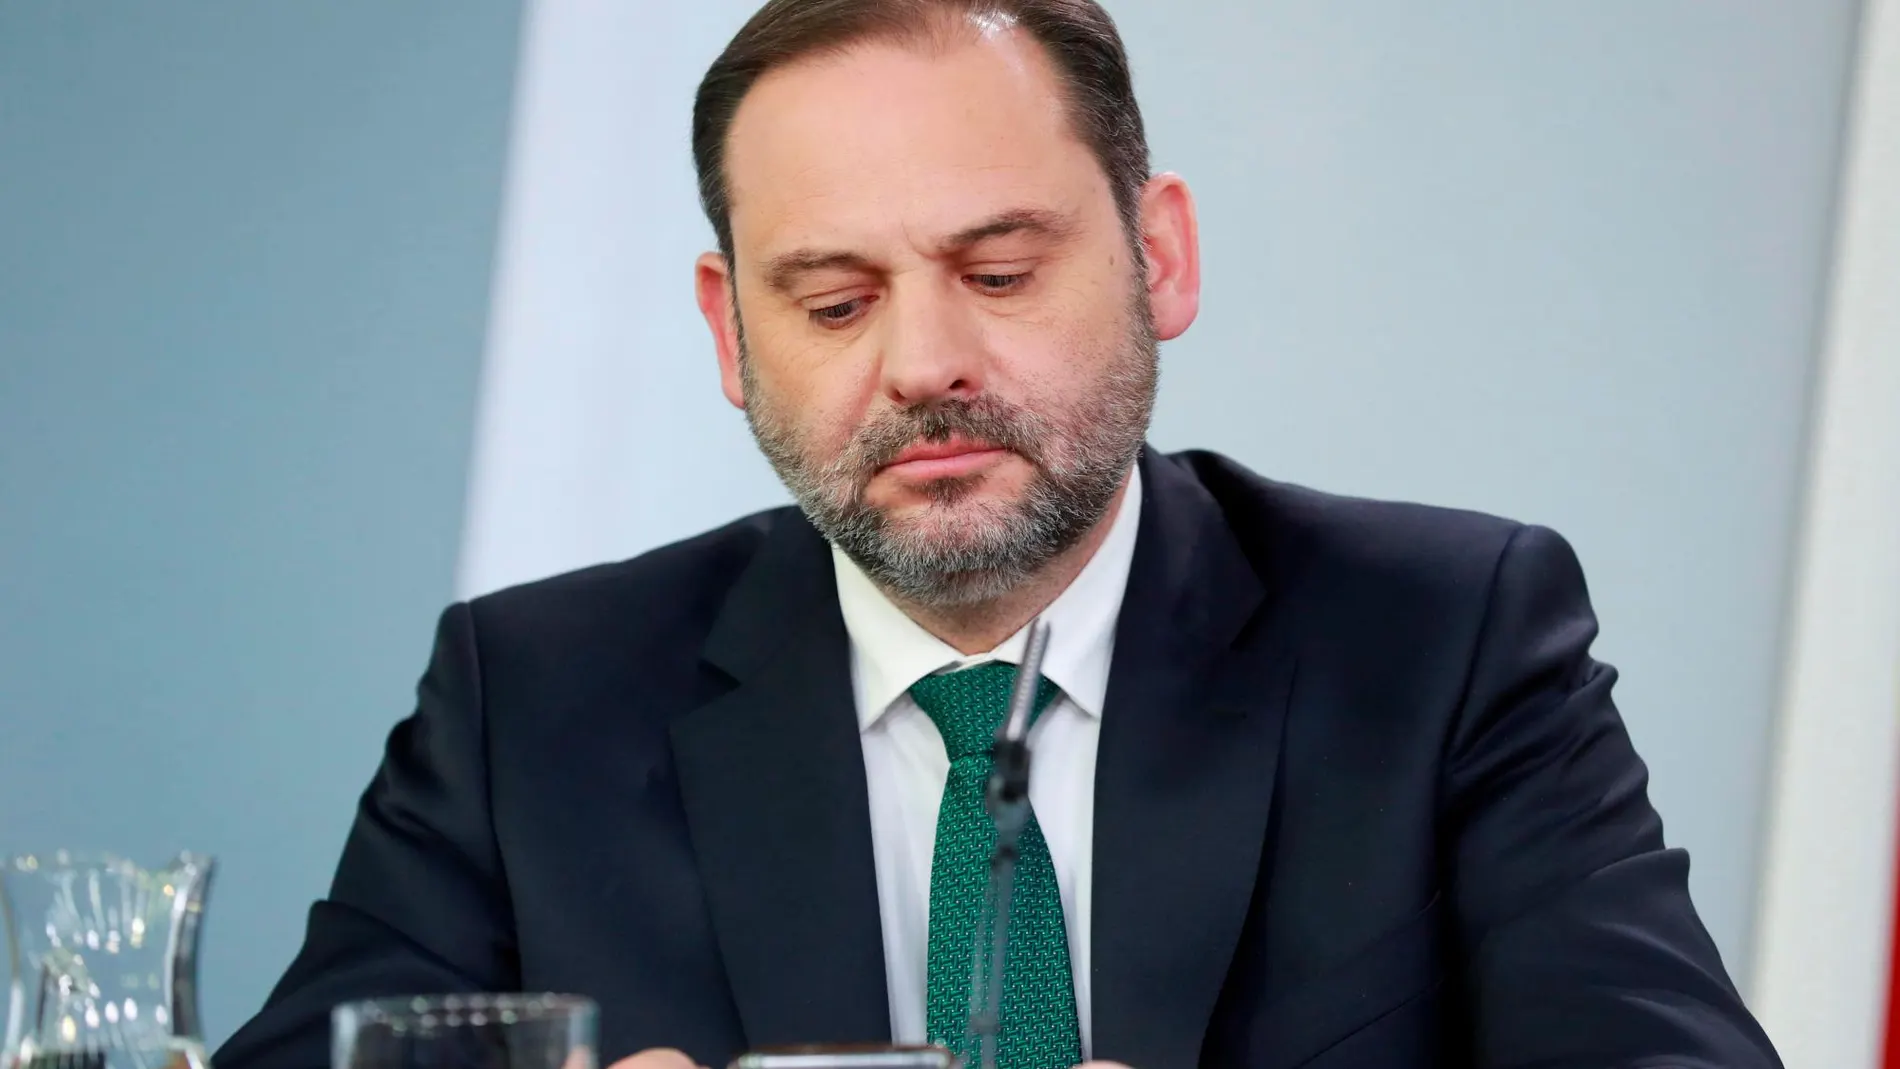 El ministro de Fomento, José Luis Ábalos, durante la rueda prensa tras la reunión del Consejo de Ministros